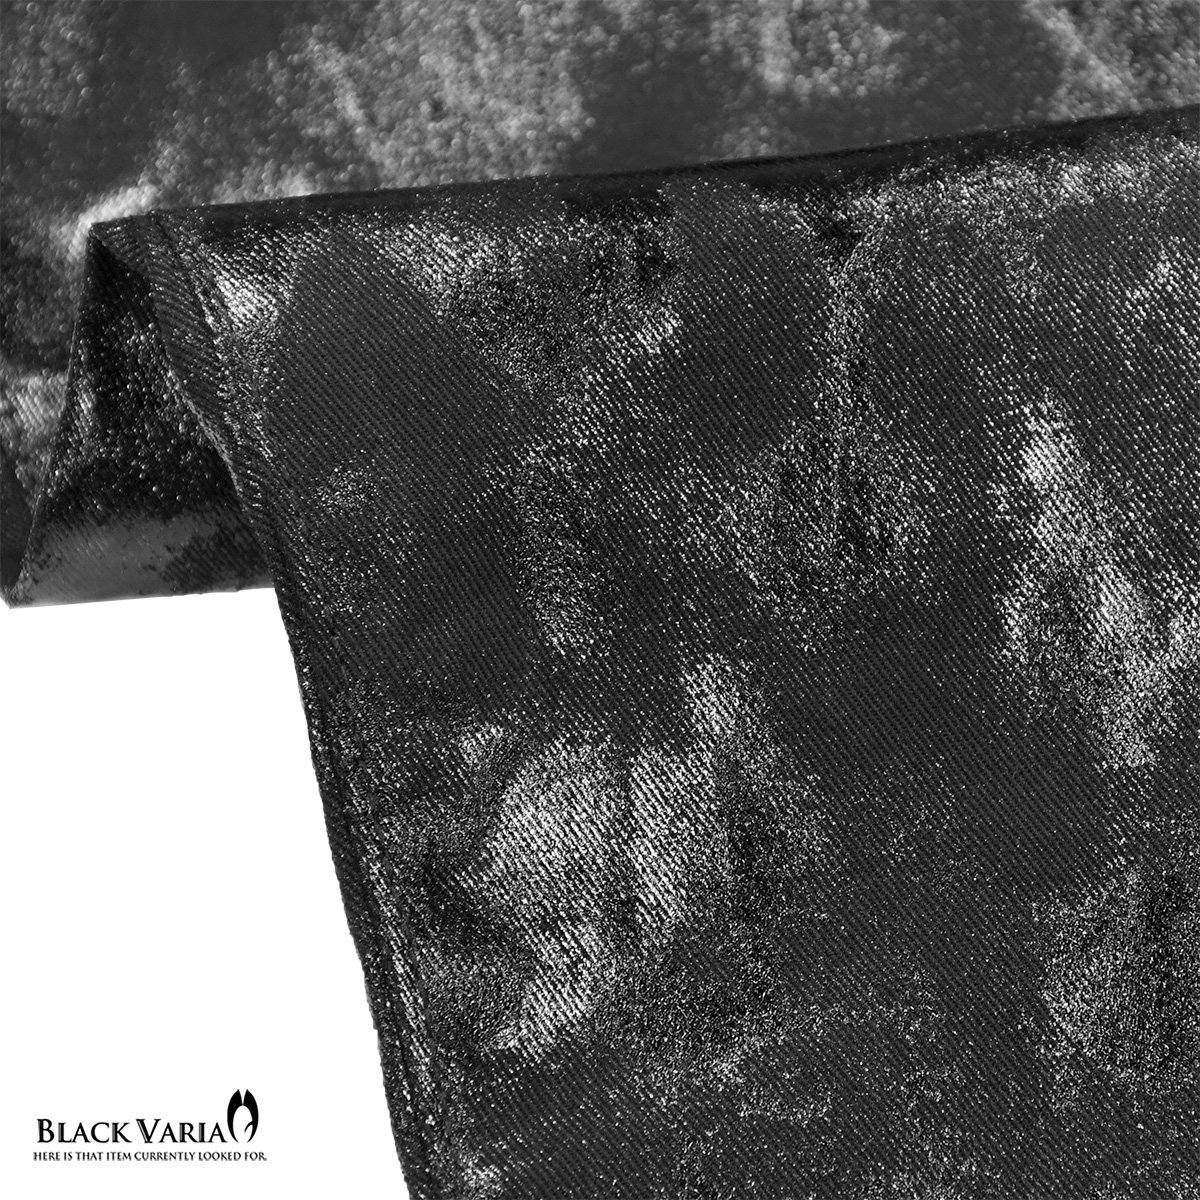 222851-bkmt BlackVaria ロングパンツ 箔プリント 光沢 ブーツカット ローライズ シューカット メンズ(ムラ柄ブラック黒) XL32 股上浅め_画像9